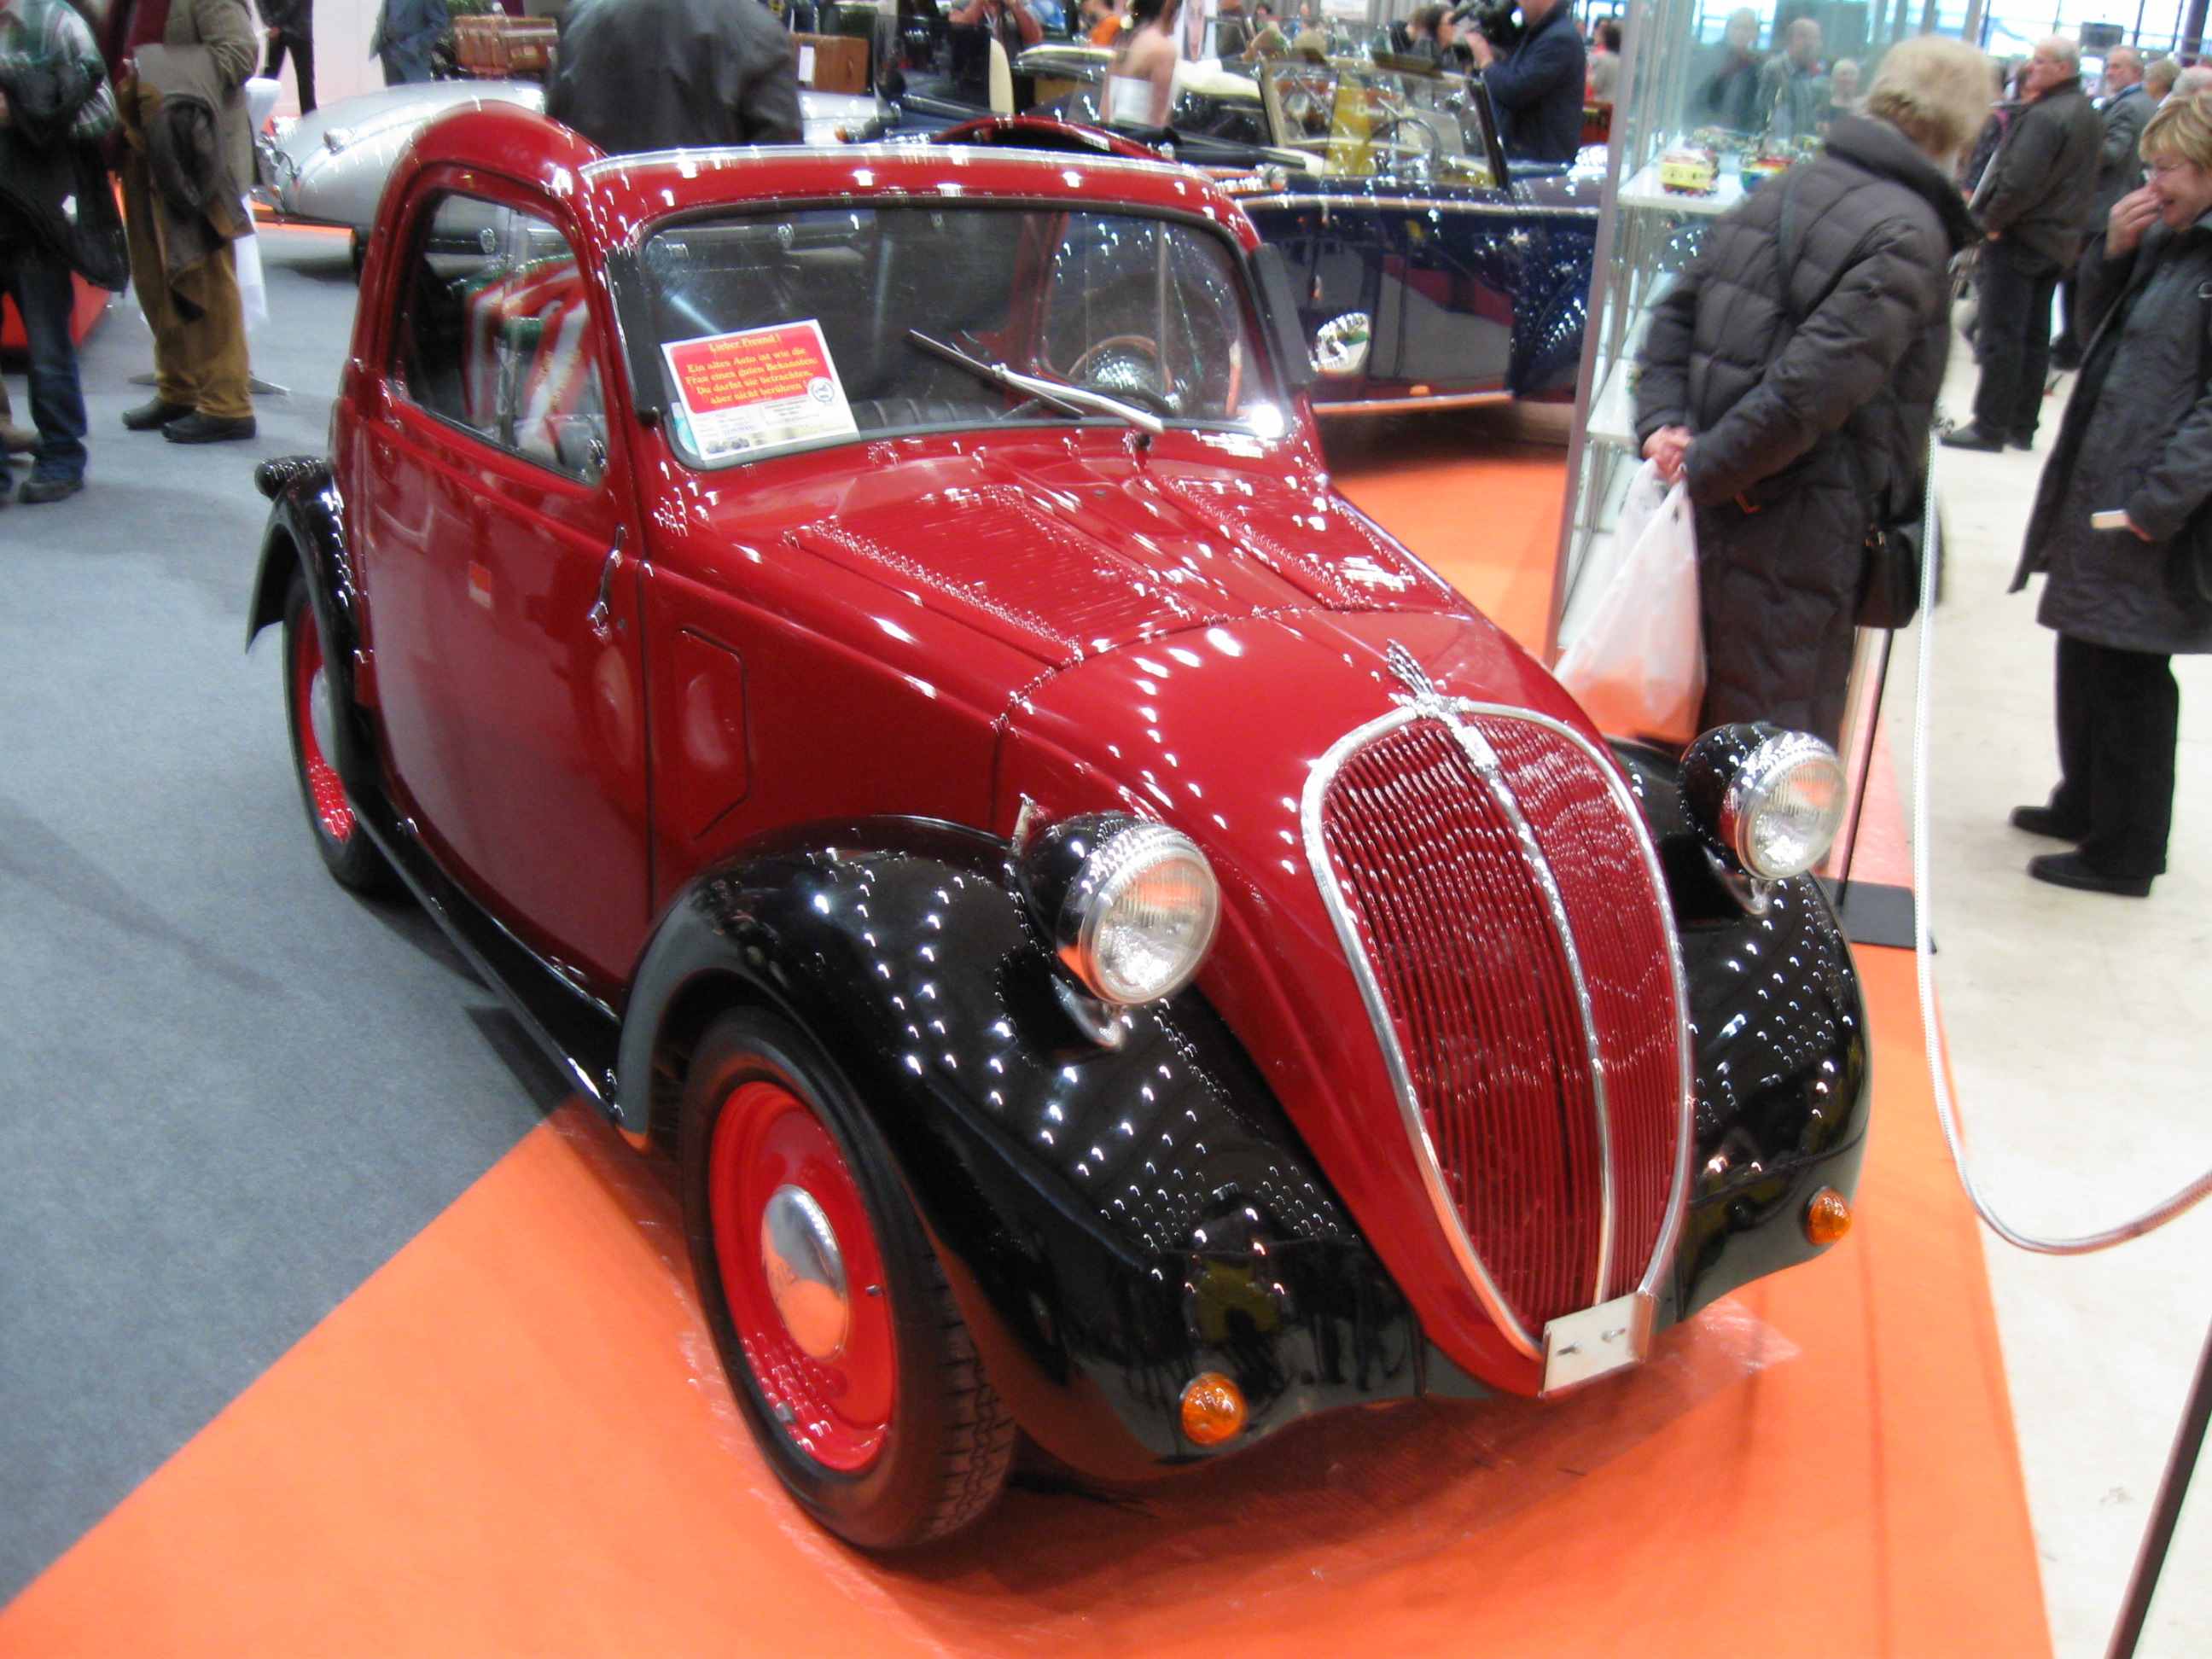 Fiat Topolino A